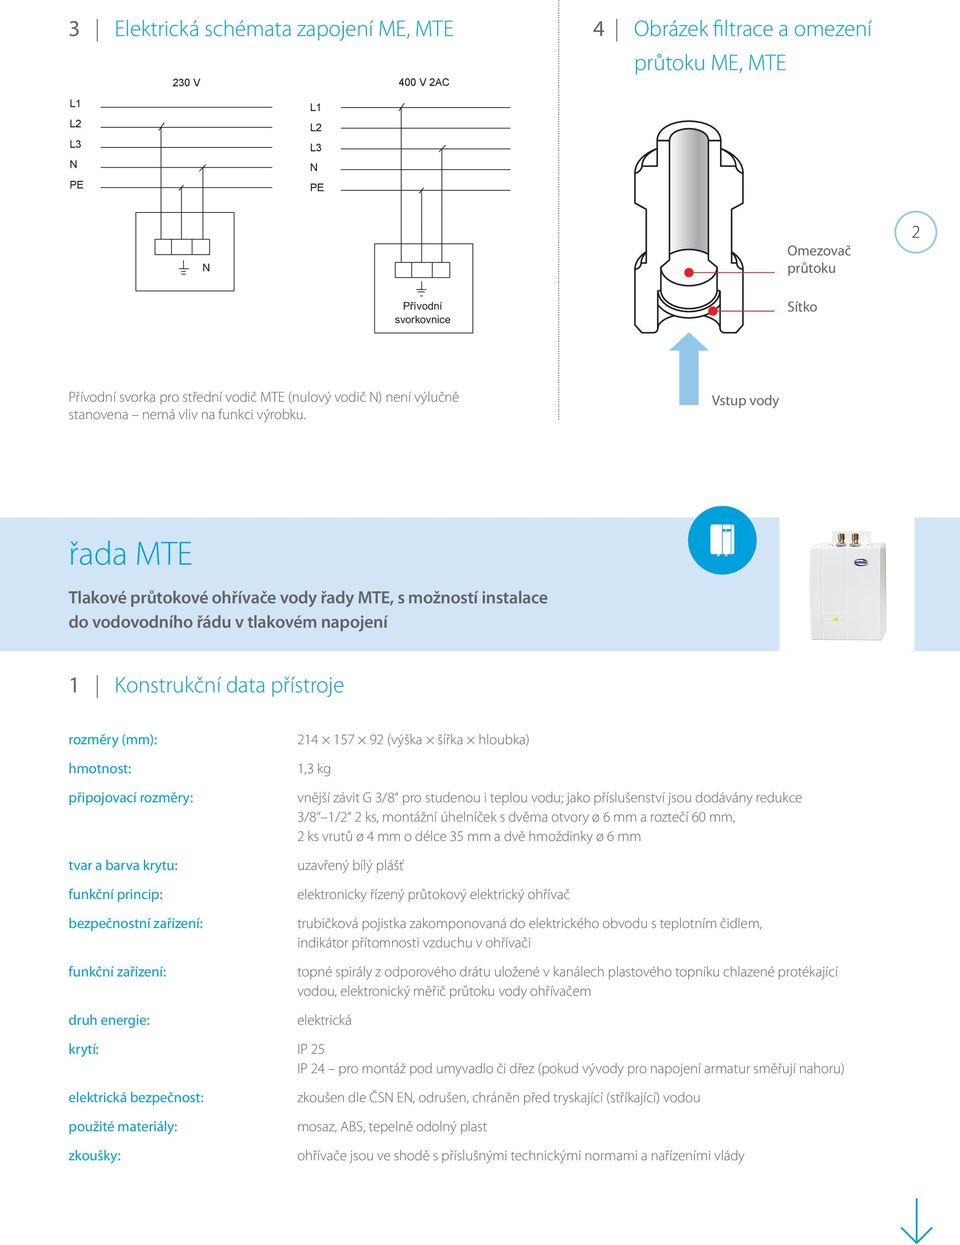 Vstup vody řada MTE Tlakové průtokové ohřívače vody řady MTE, s možností instalace do vodovodního řádu v tlakovém napojení 1 Konstrukční data přístroje rozměry (mm): hmotnost: připojovací rozměry: